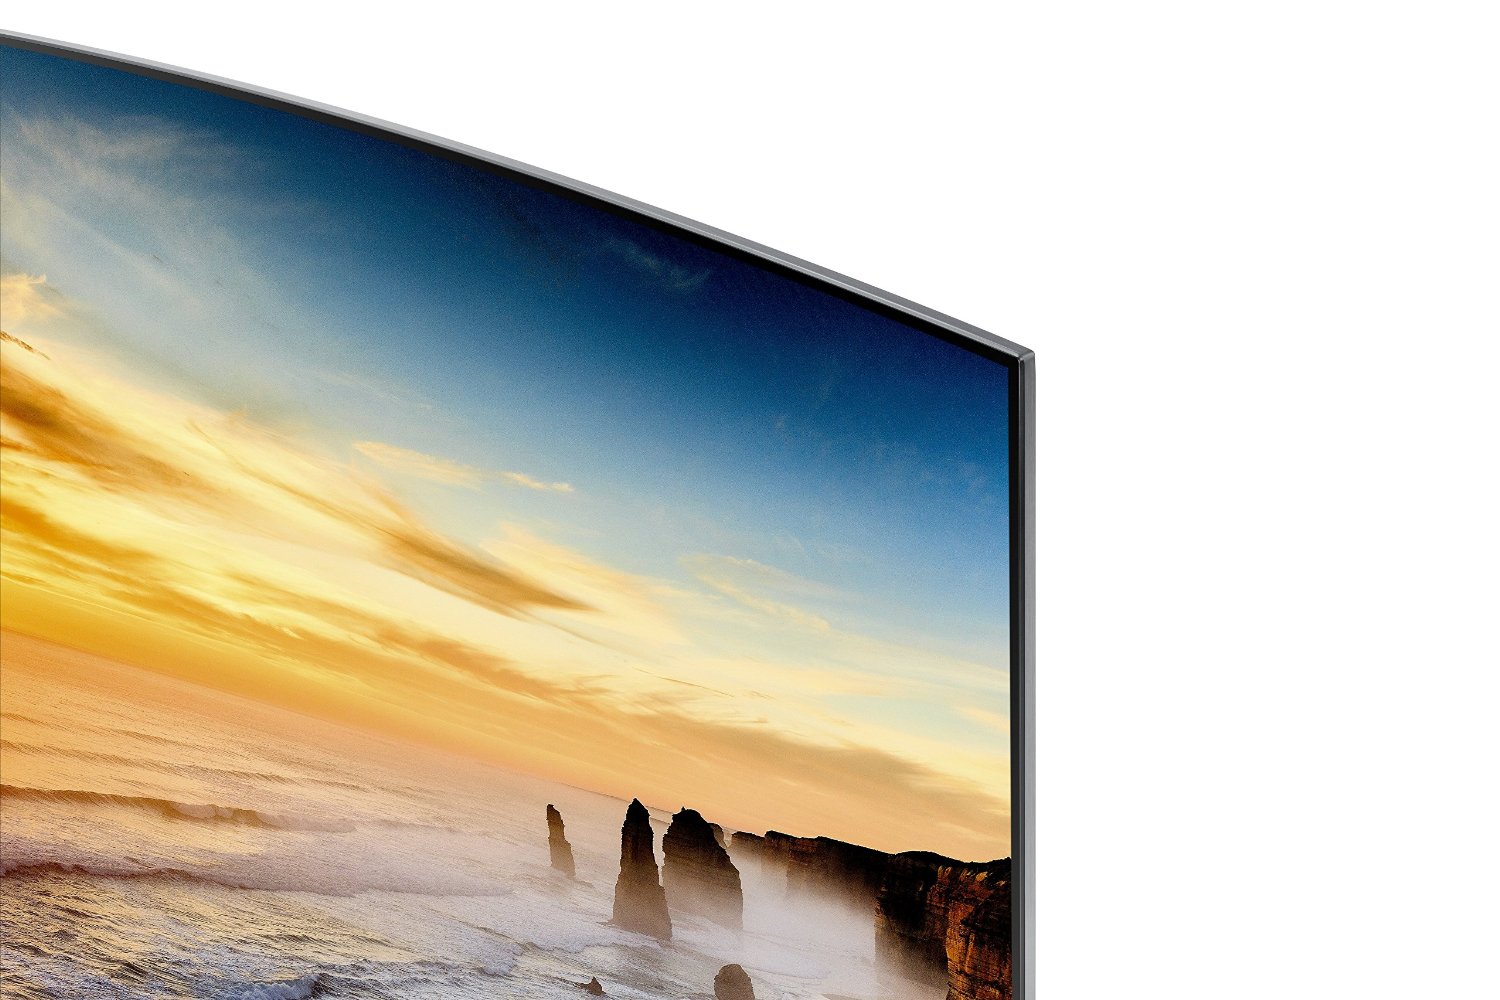 Samsung Un65ks9800 Curved 65 Inch 4k Ultra Hd Smart Led Tv 2016 Model N4 Free Image Download 1759